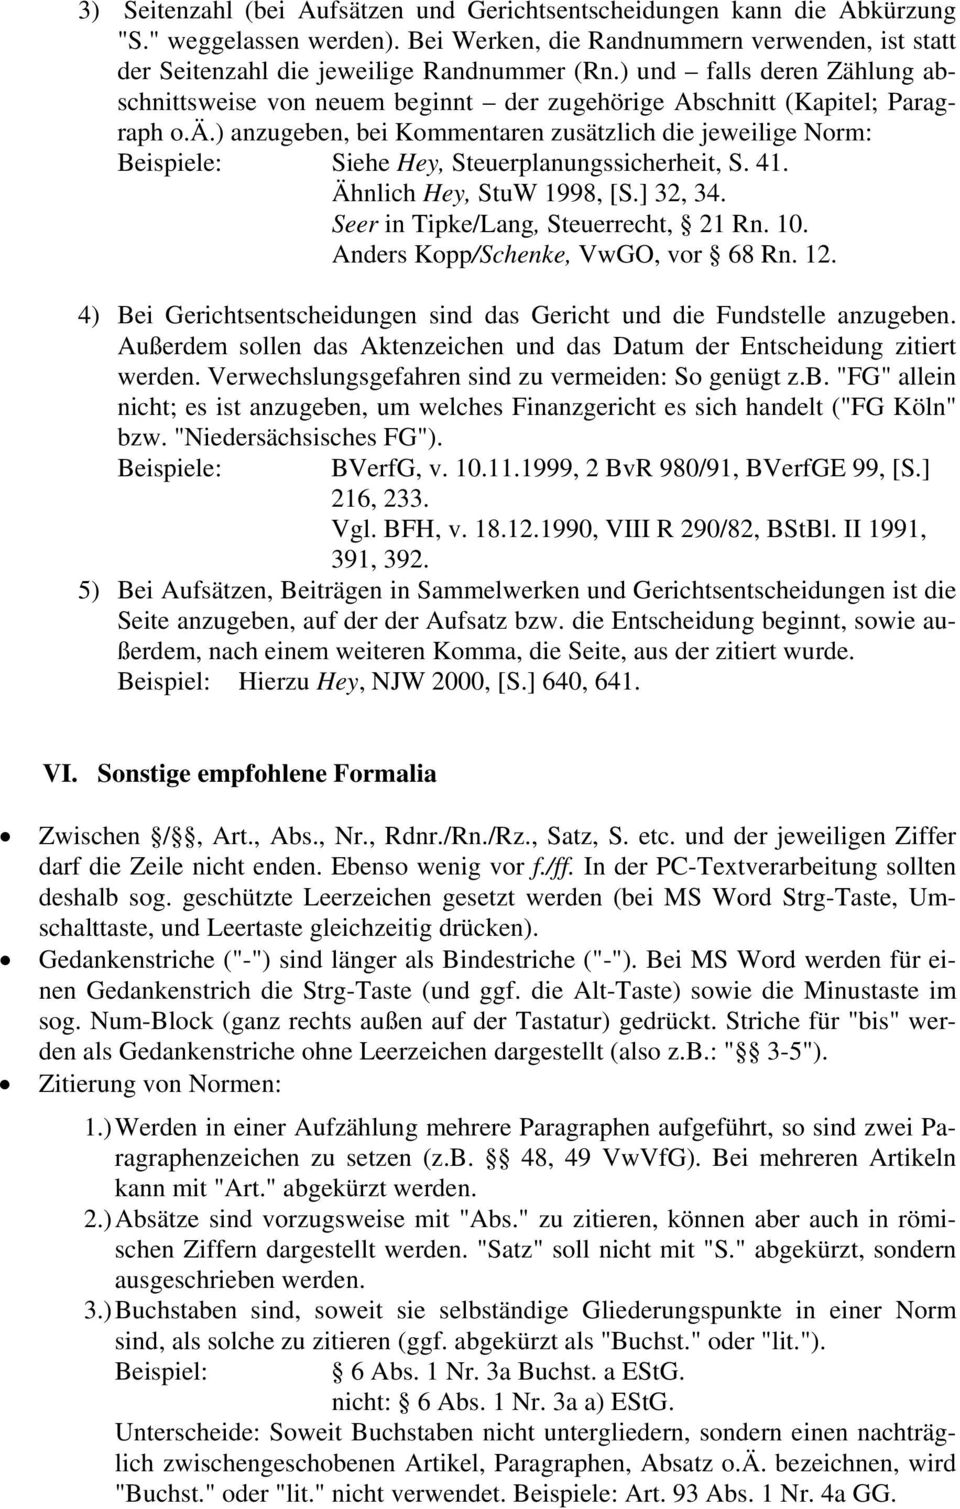 41. Ähnlich Hey, StuW 1998, [S.] 32, 34. Seer in Tipke/Lang, Steuerrecht, 21 Rn. 10. Anders Kopp/Schenke, VwGO, vor 68 Rn. 12.